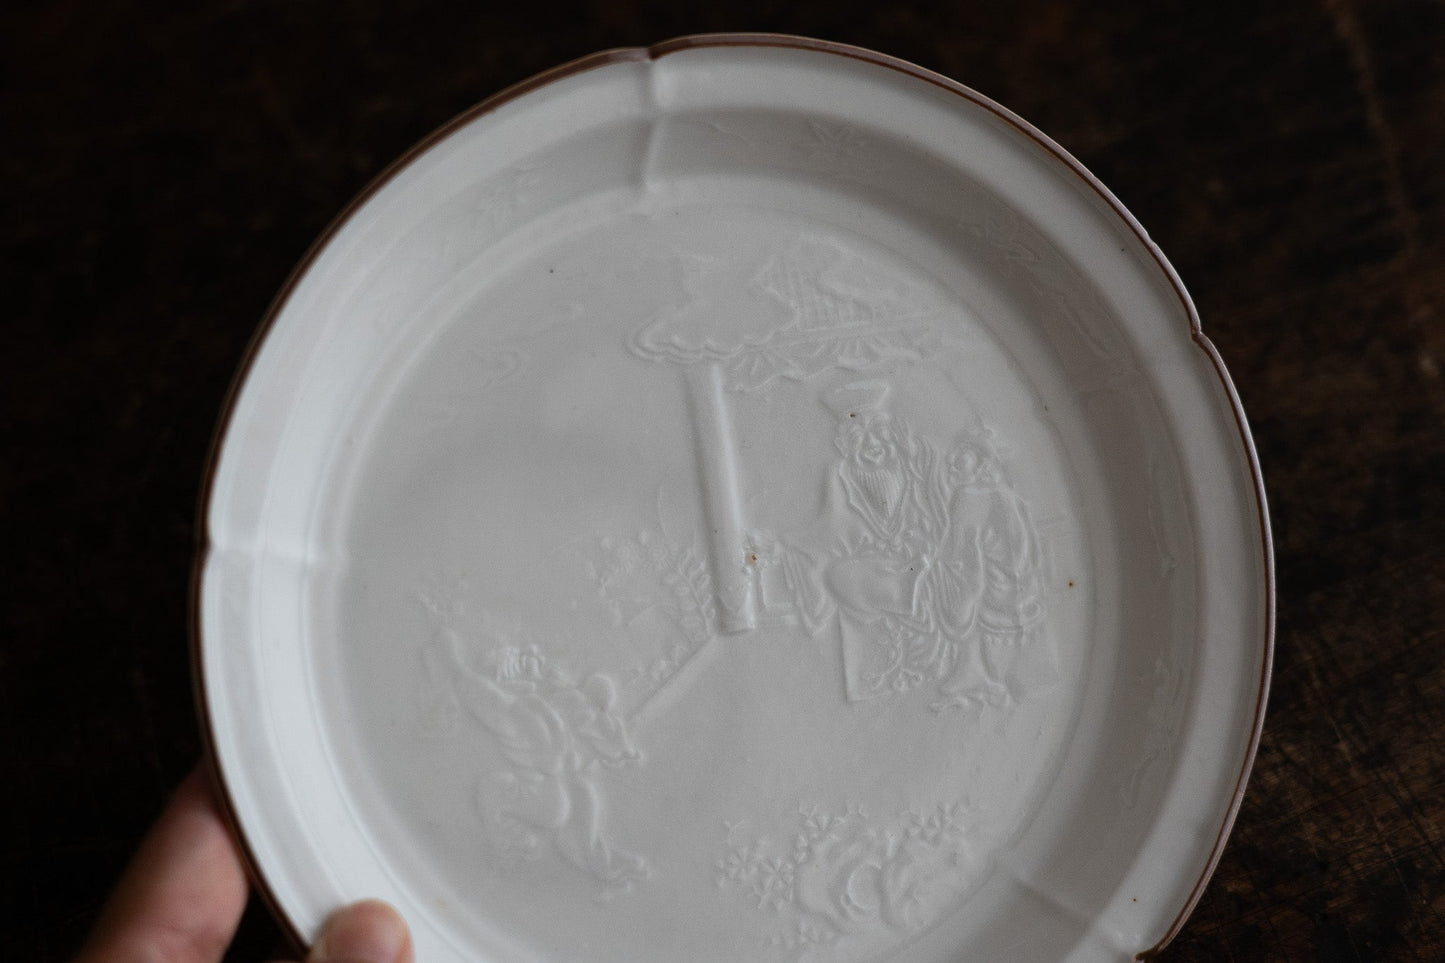 Kakiemon White Porcelain Flower Shaped Plate 【Gray stain】